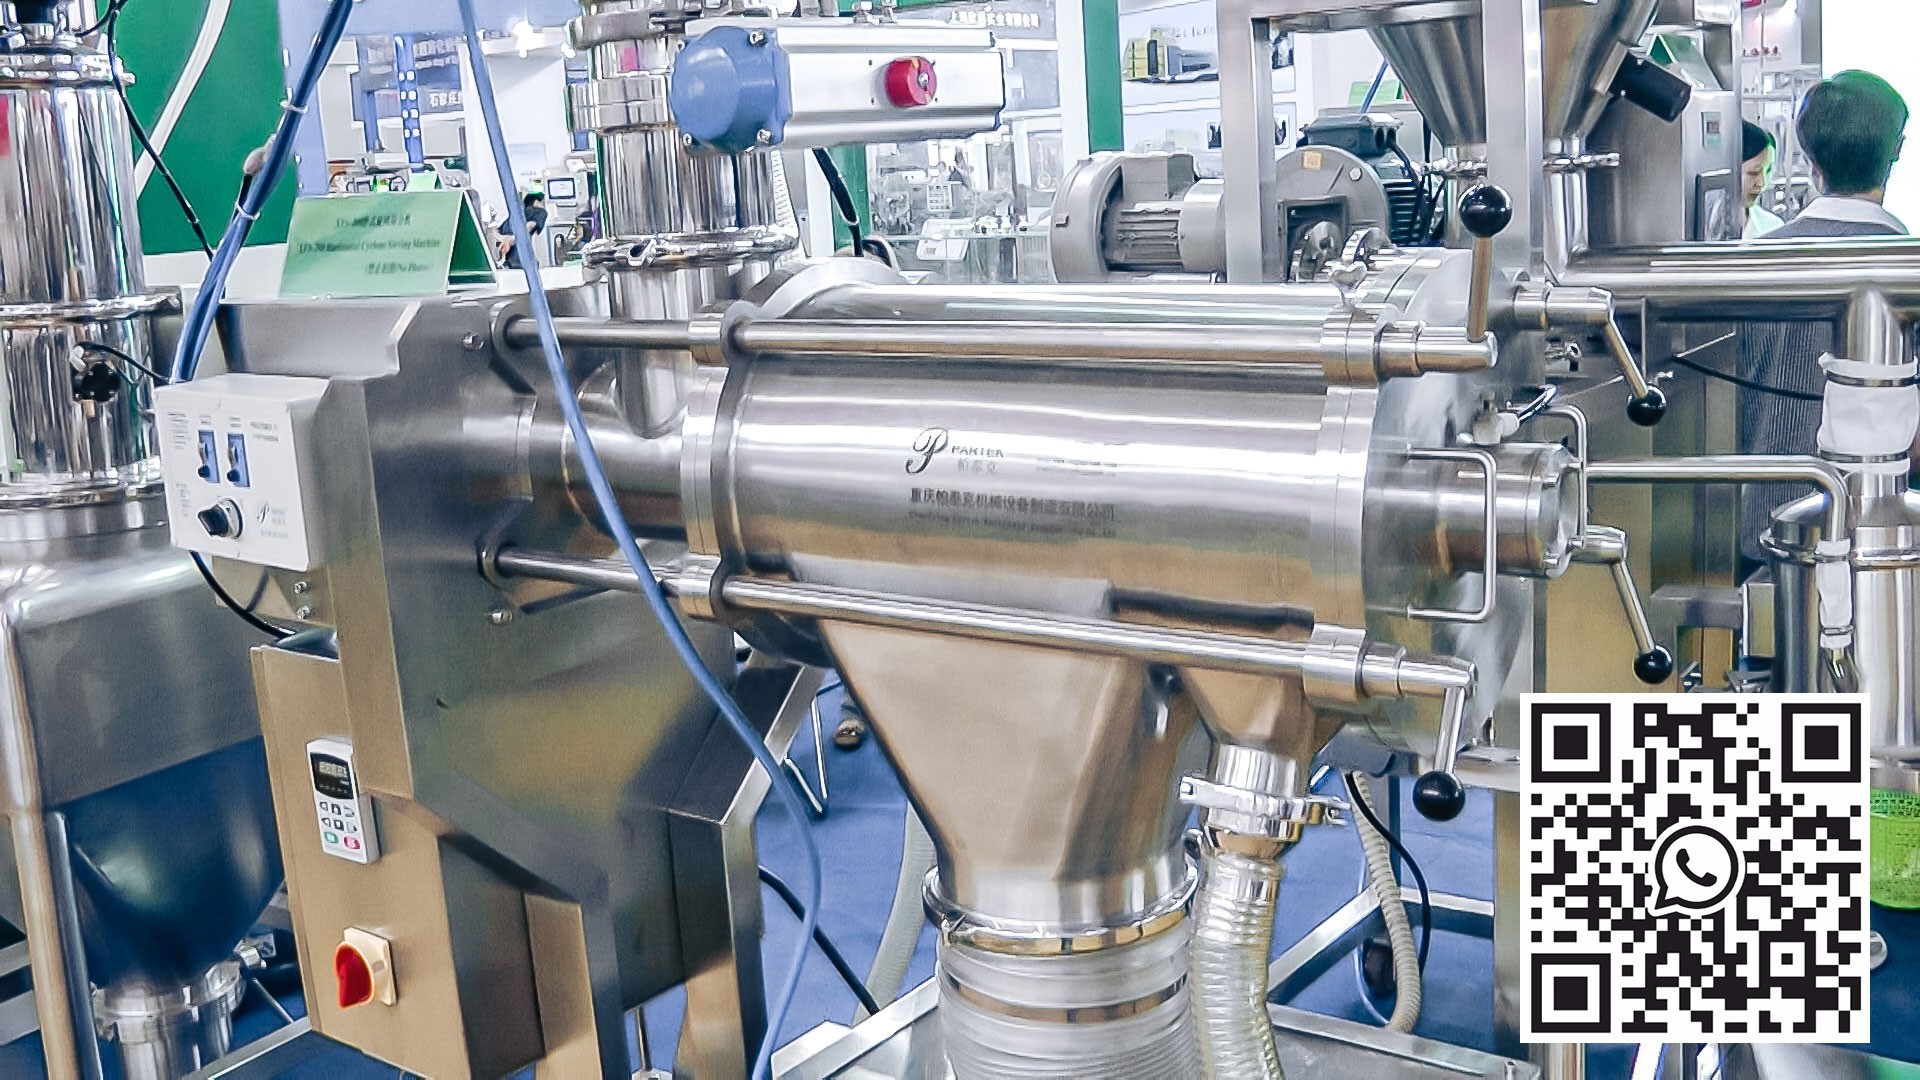 Equipo automático para la preparación y mezcla de polvos en la producción farmacéutica Eslovaquia